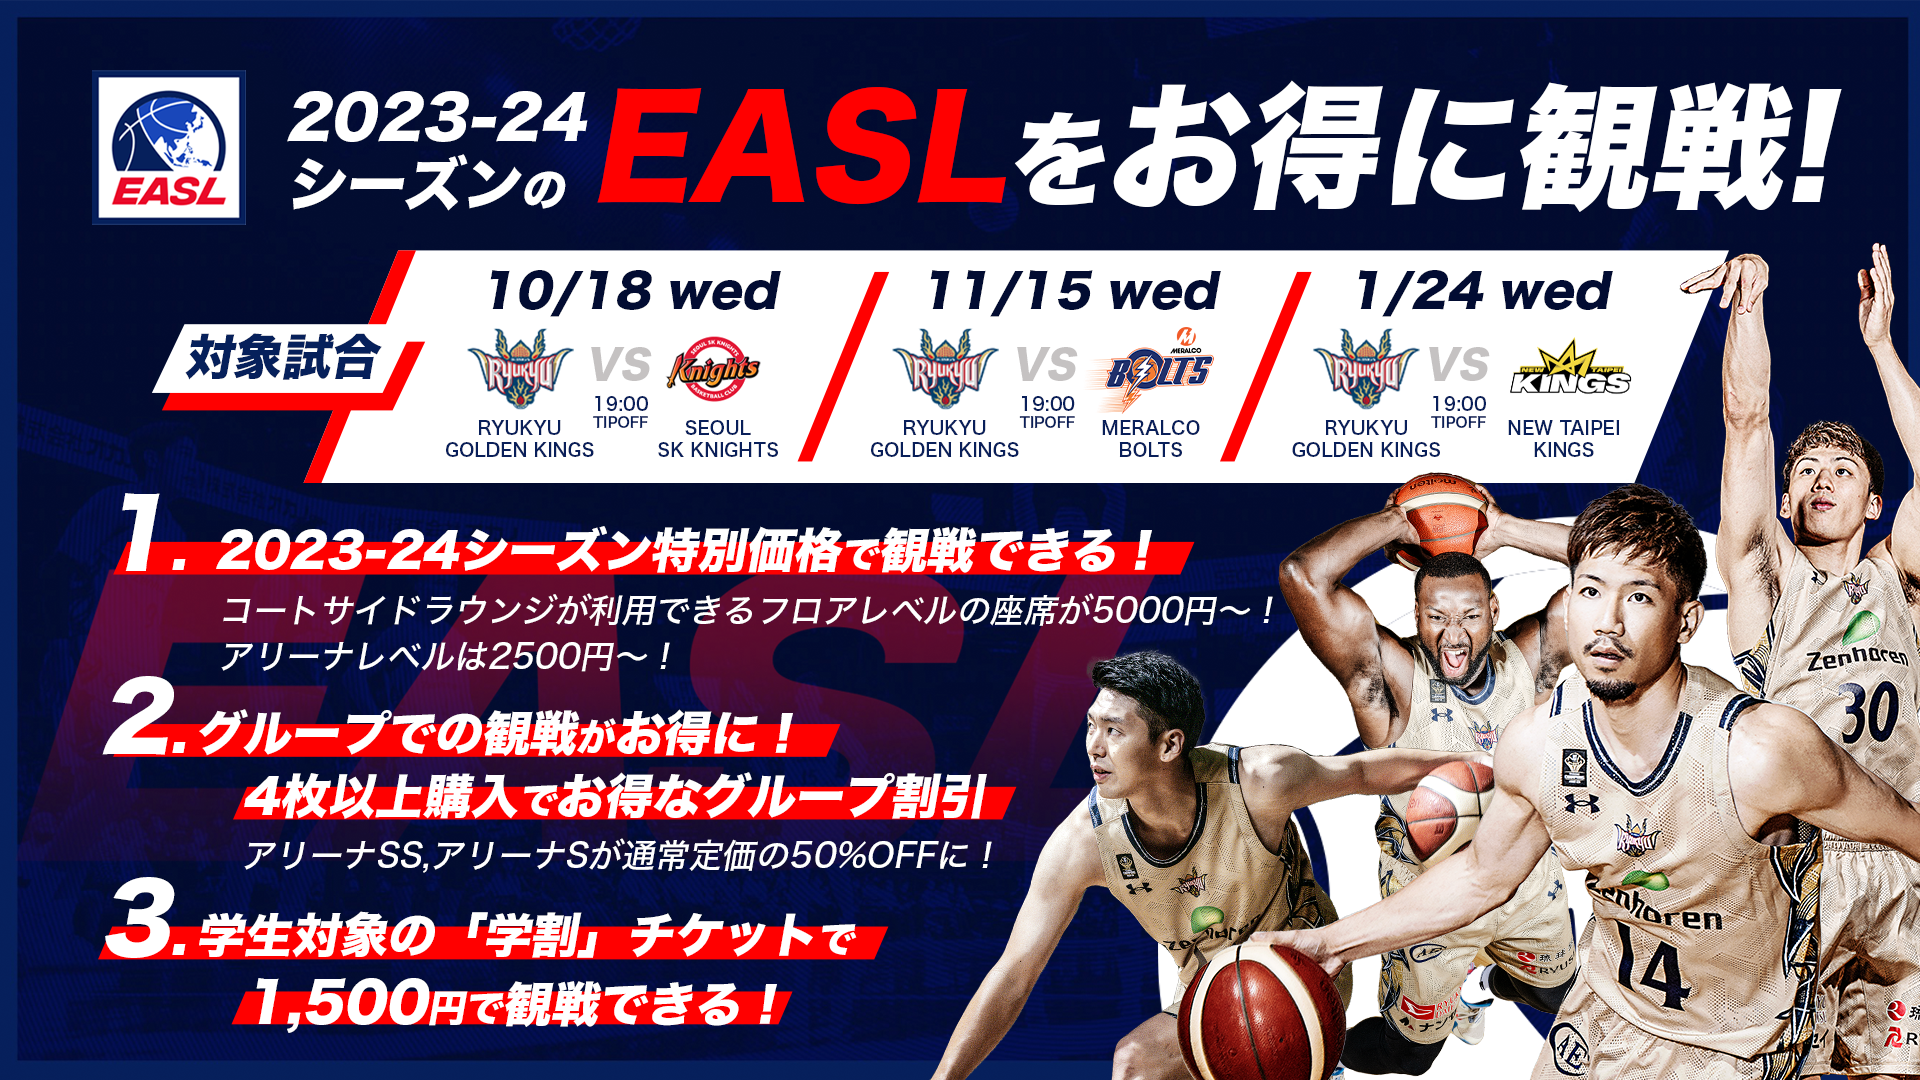 東アジアスーパーリーグ(EASL)2023-24シーズン チケット販売概要の 